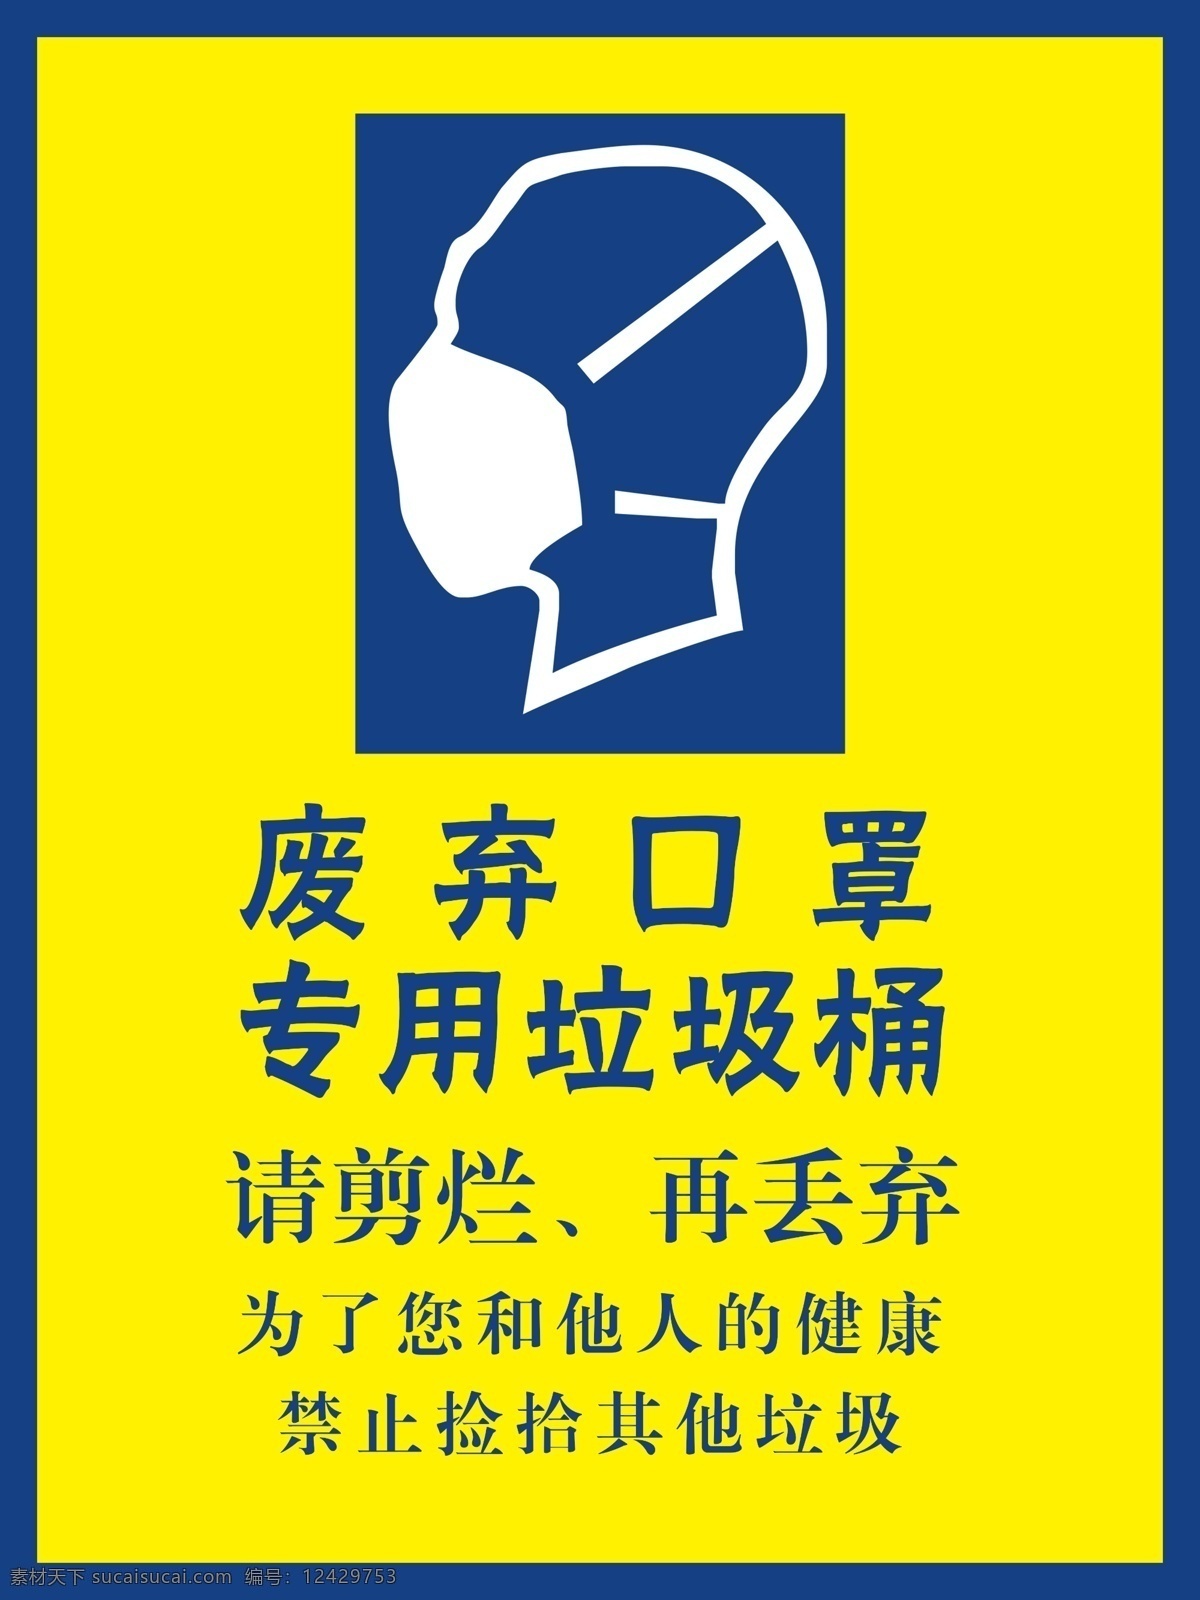 废弃 口罩 专用 投放 垃圾桶 废弃口罩 垃圾桶标识 防疫素材 口罩处理 标志图标 公共标识标志